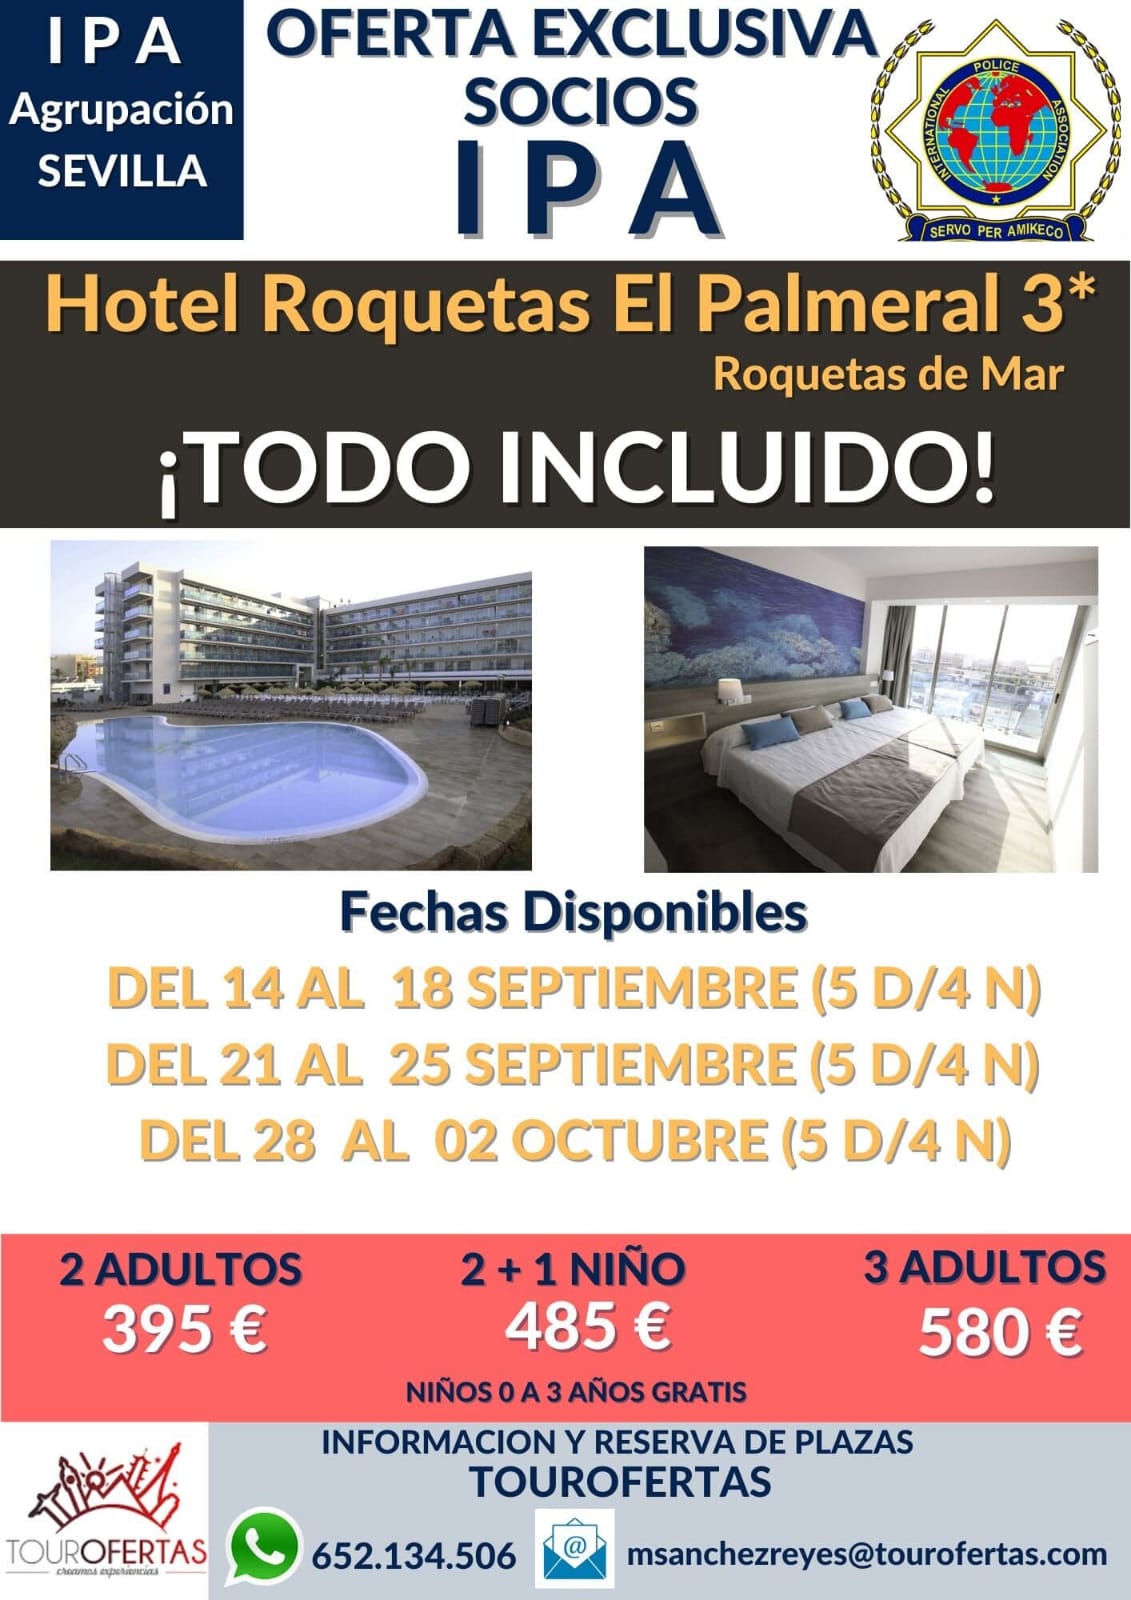 Hotel Roquetas El Palmeral